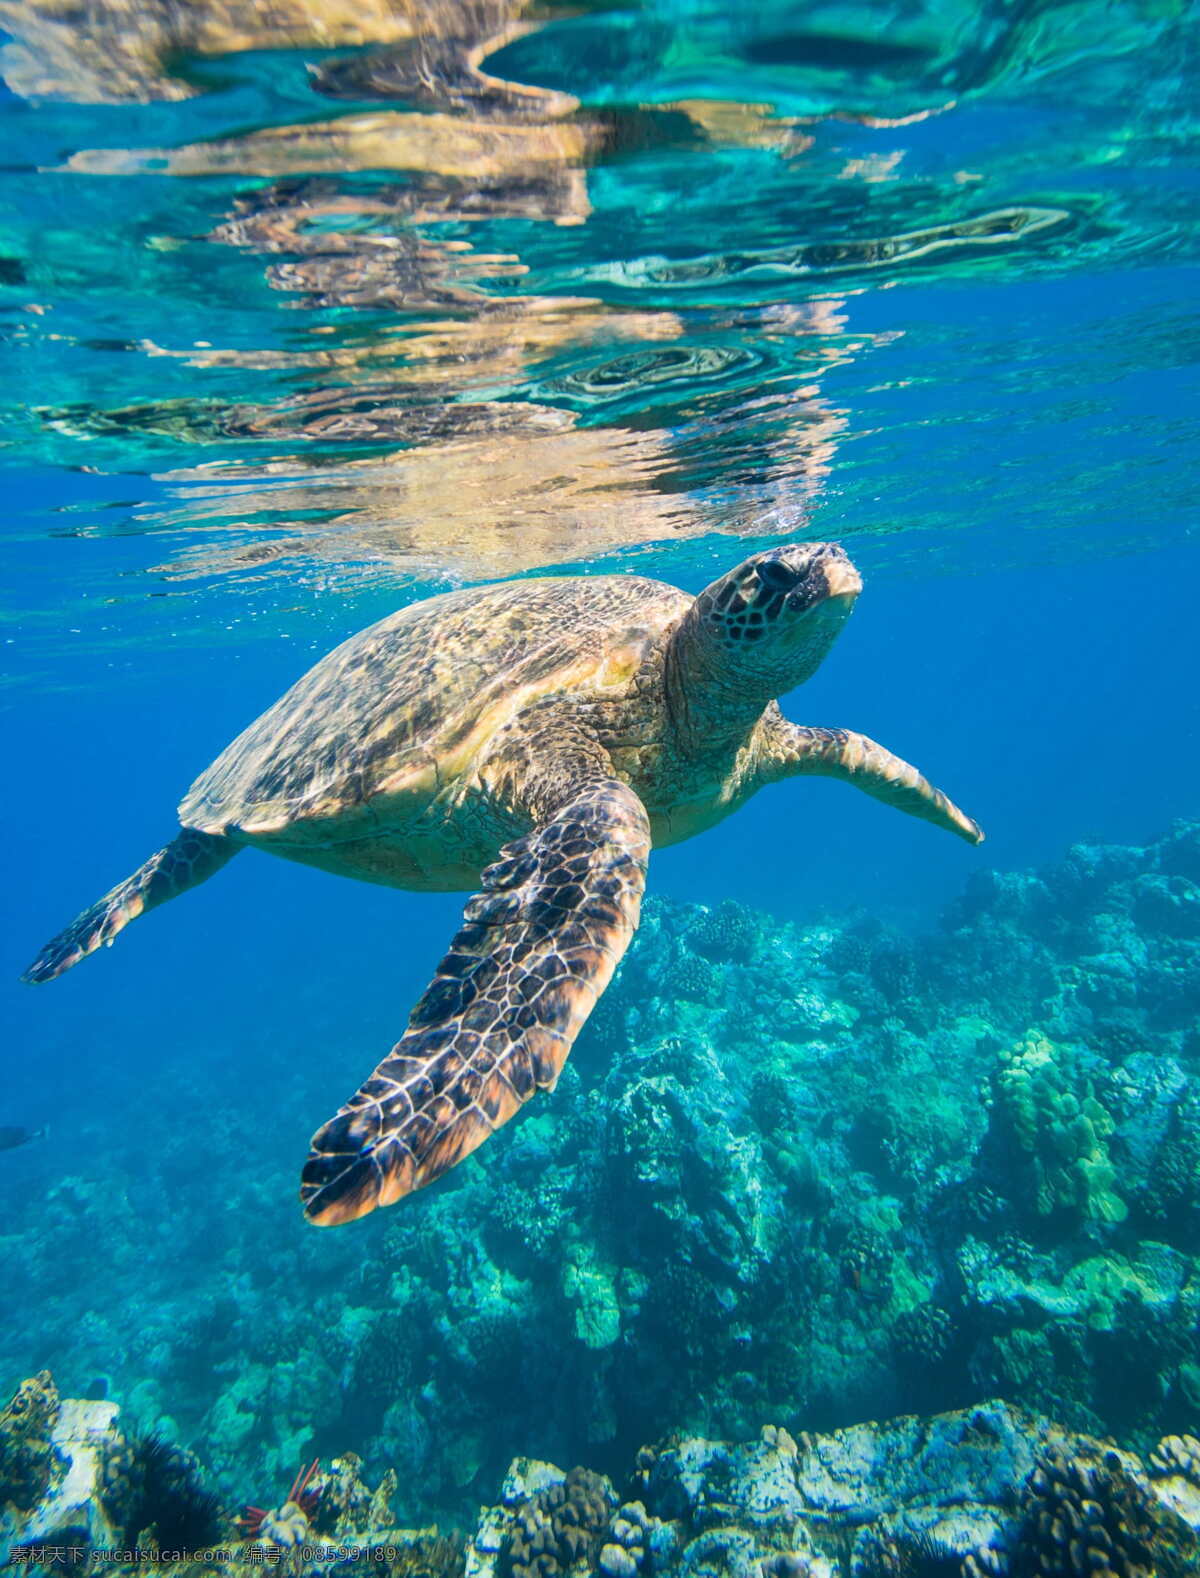 游弋的海龟 海龟 乌龟 大海龟 生物世界 海洋生物